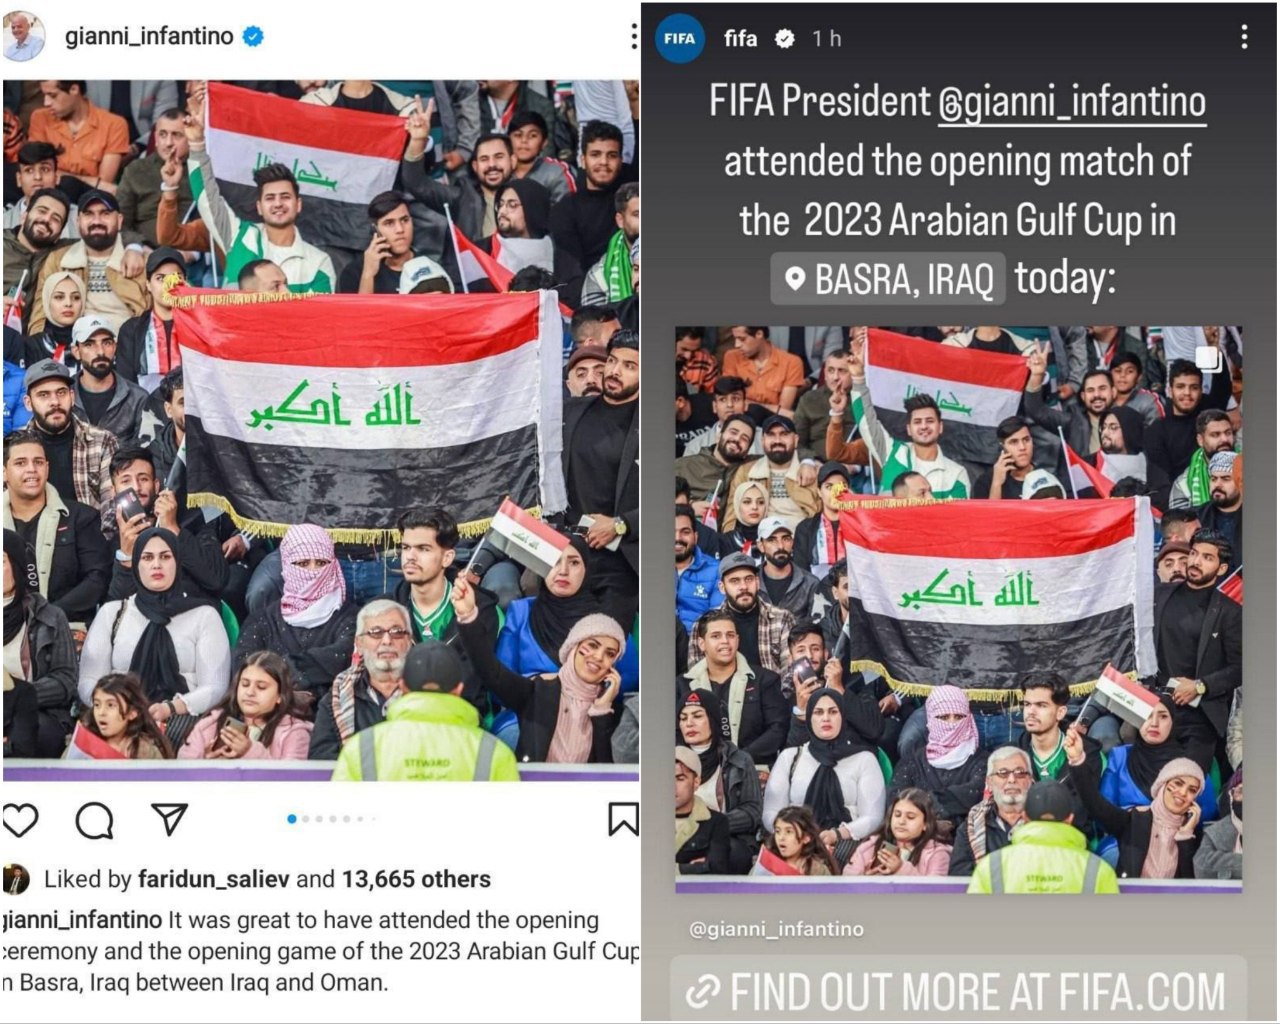  استفاده فیفا و اینفانتینو از نام جعلی برای خلیج فارس / فدارسیون فوتبال اعتراض کرد